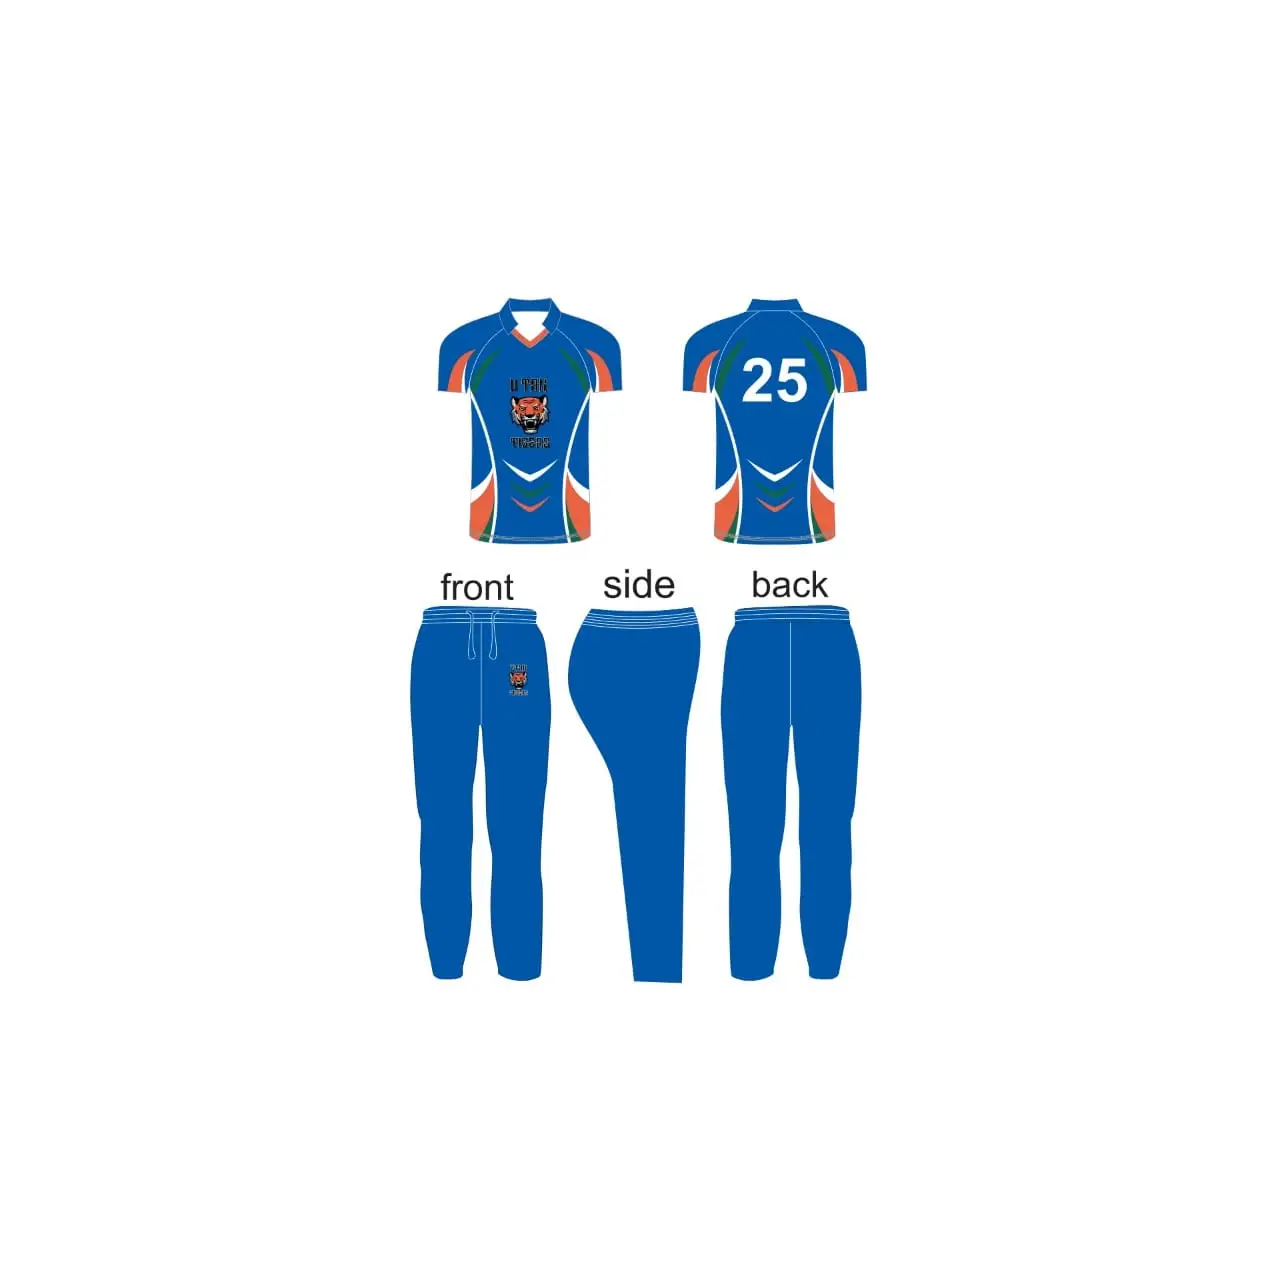 Cricket Kits - Shirts & Pants